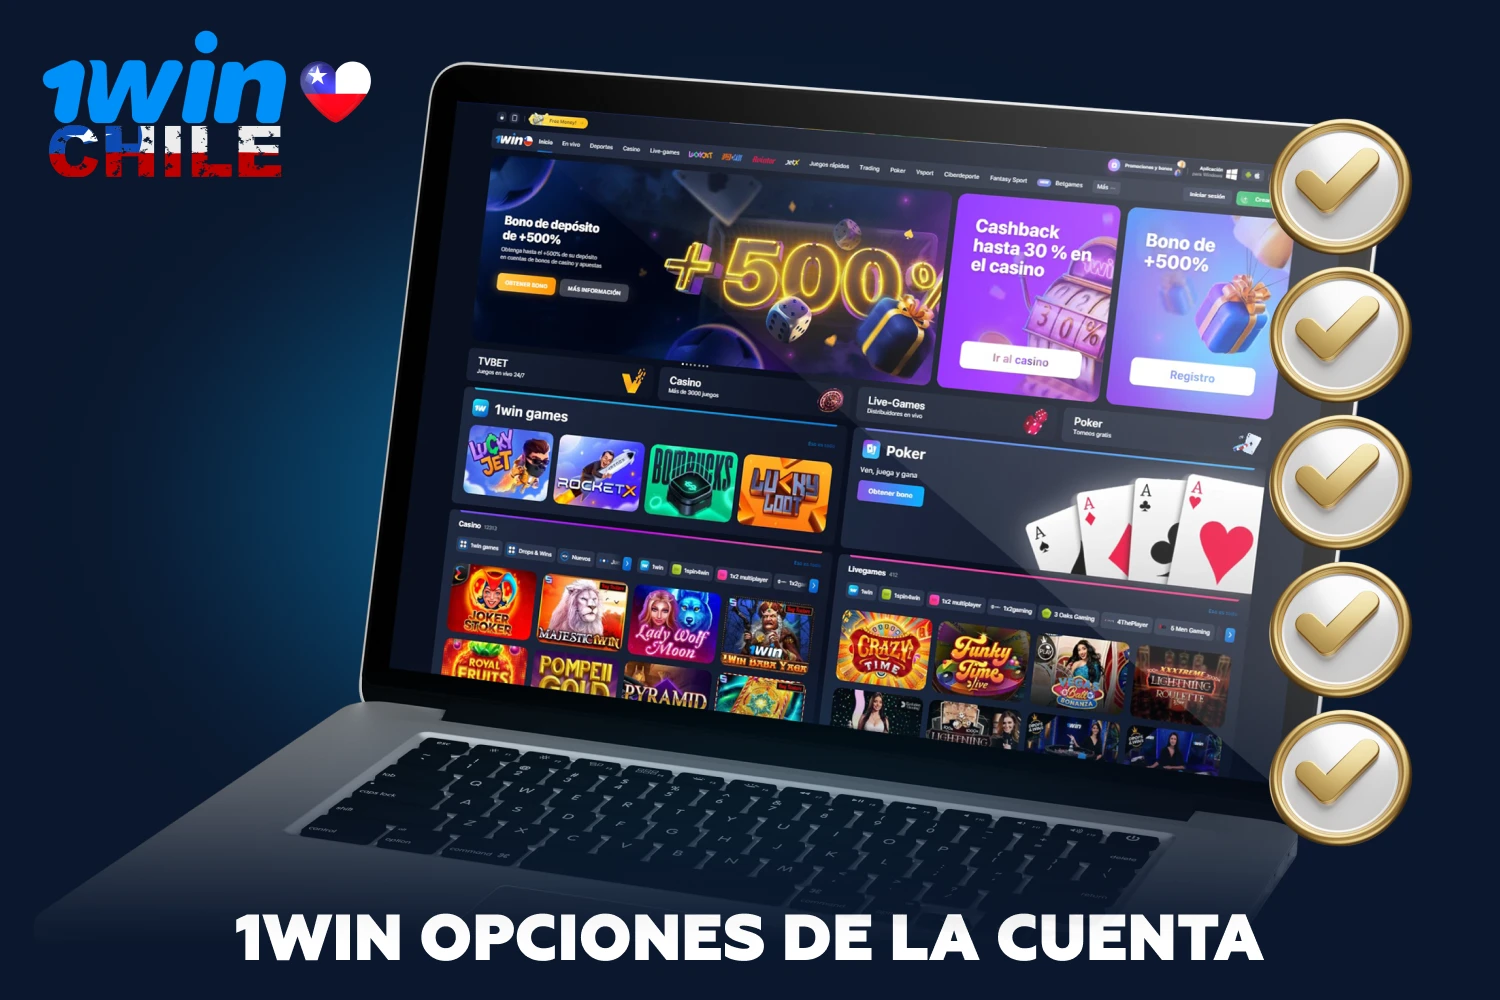 Tras registrarse correctamente en el sitio web de 1win, los jugadores de Chile tendrán acceso a una amplia gama de funciones de cuenta